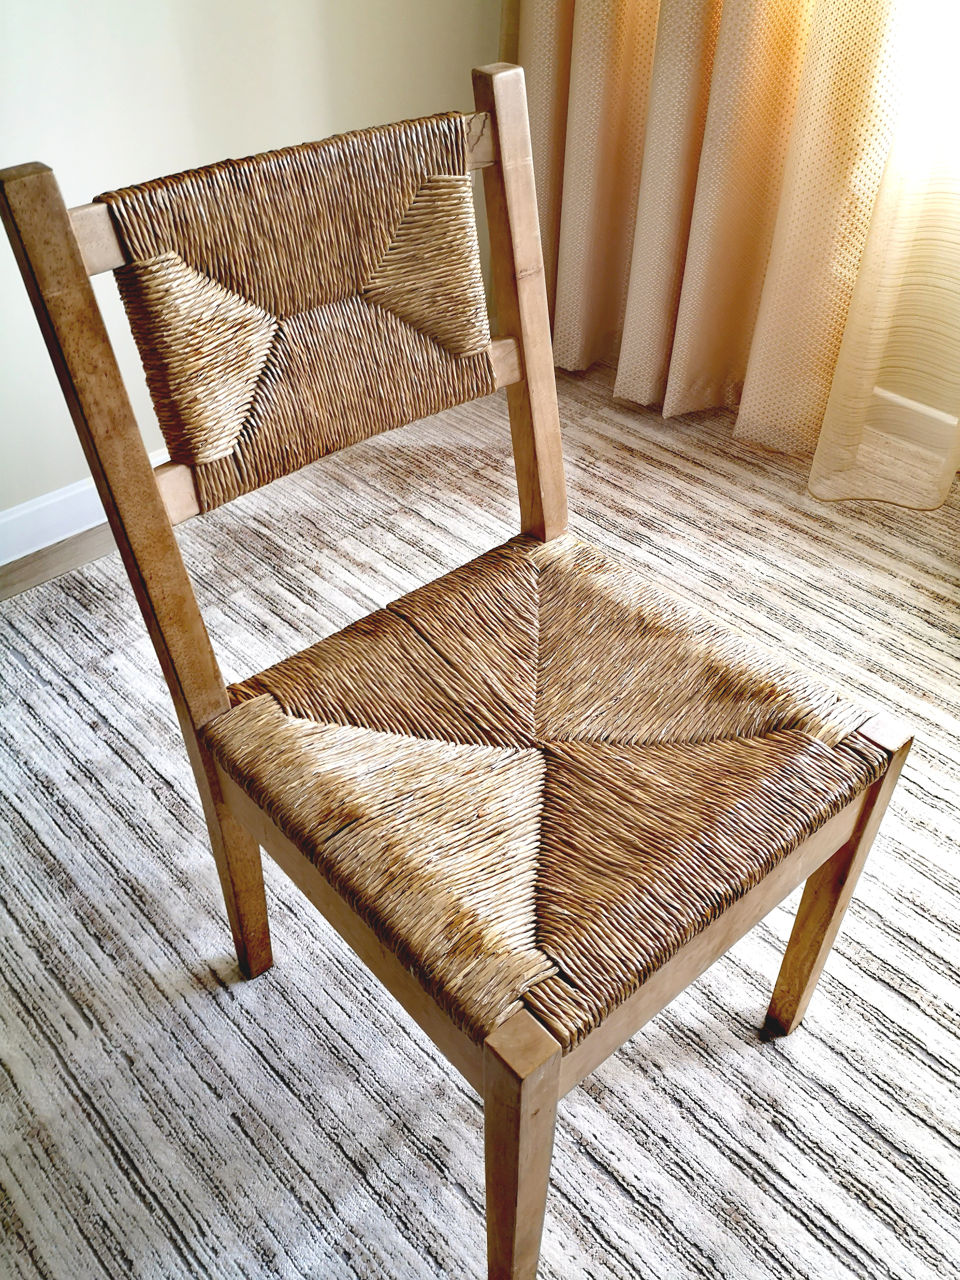  плетенные стулья